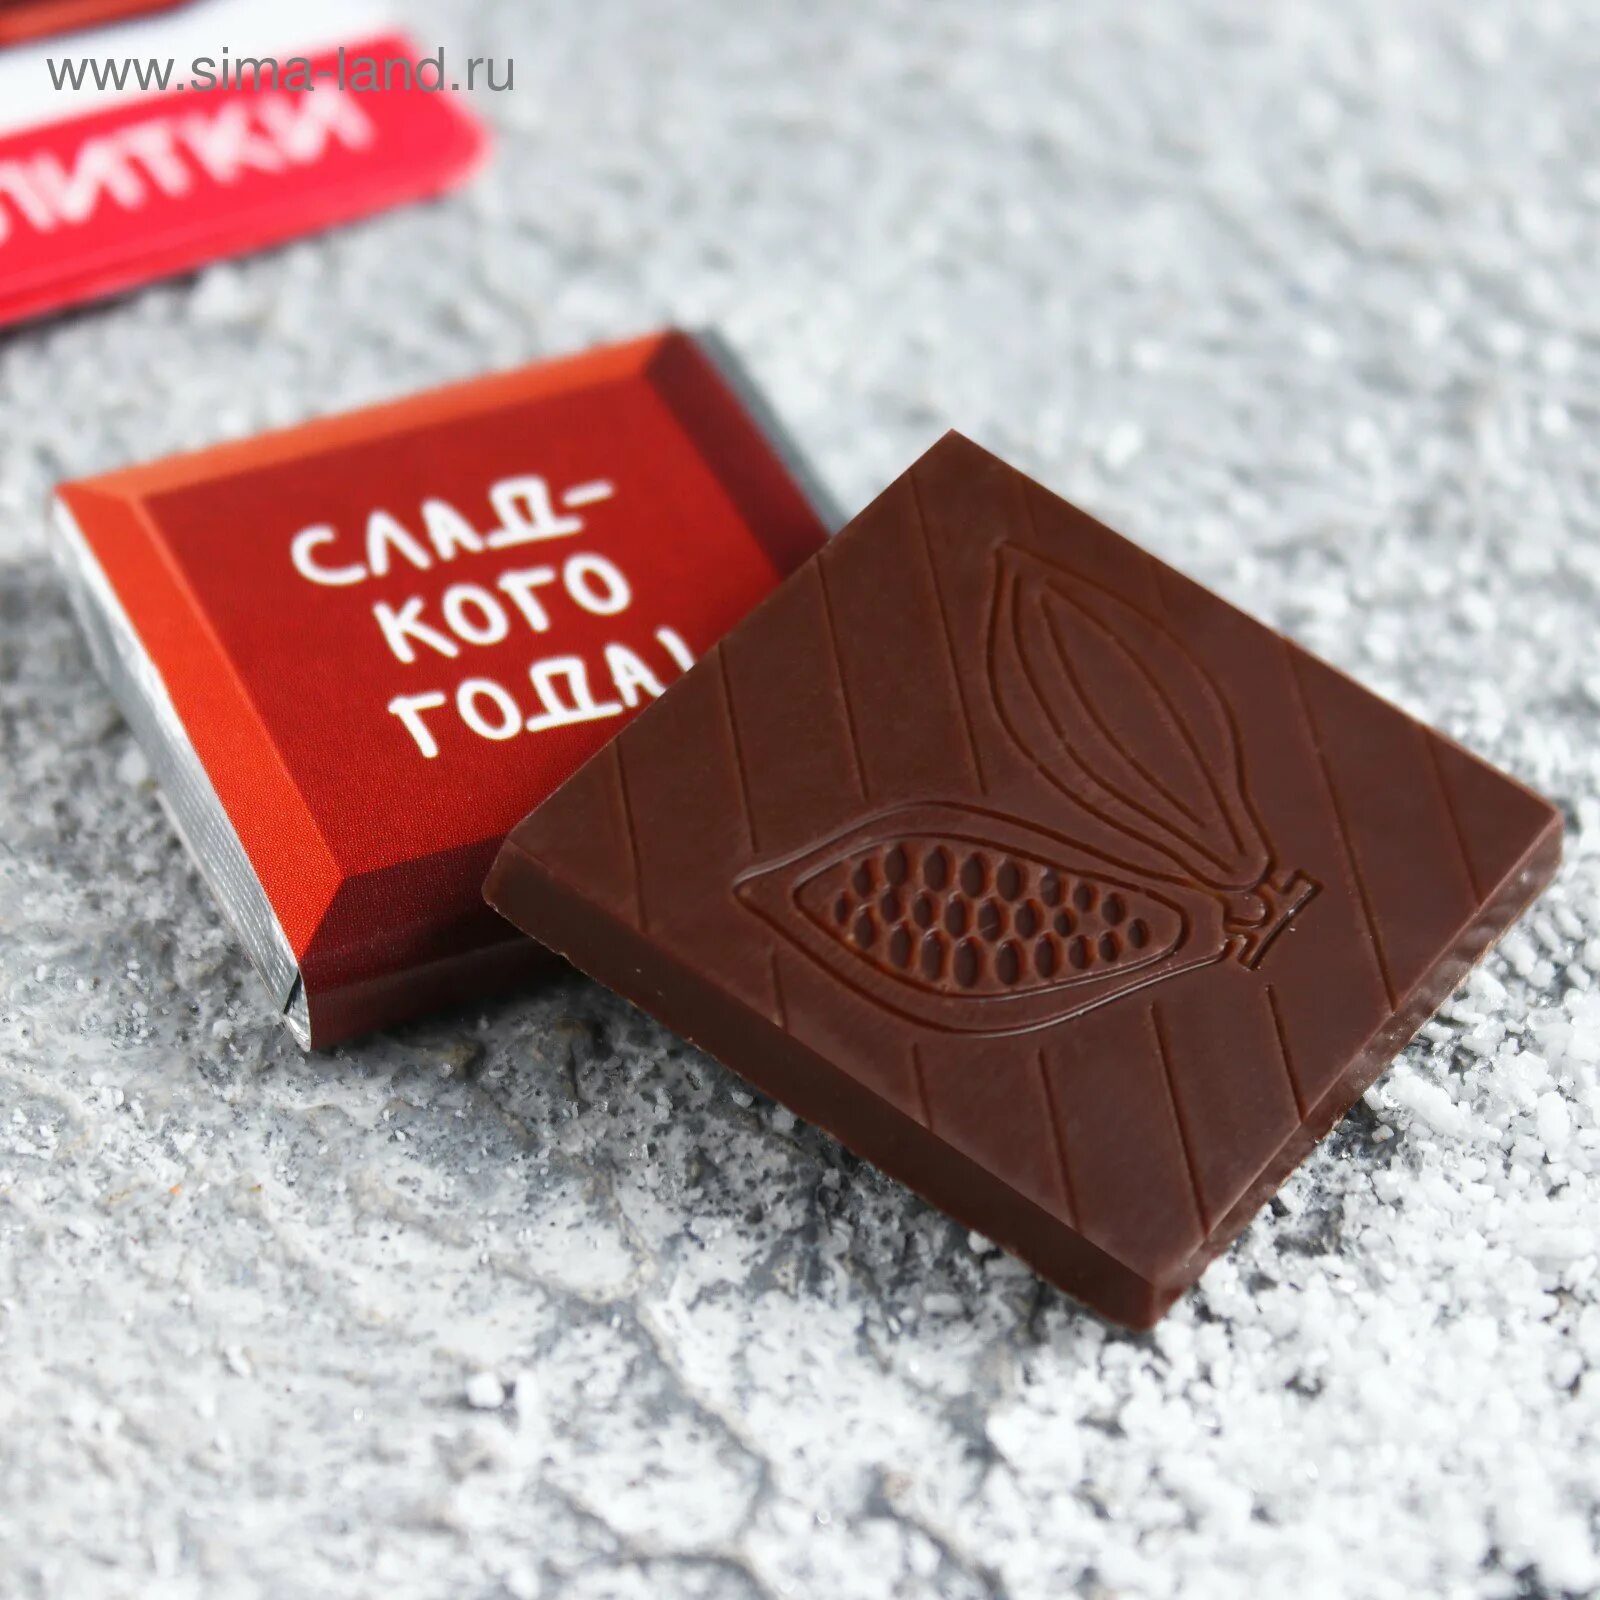 5 грамм шоколада. Мини шоколадки. Маленькие шоколадки. Шоколад с логотипом. Шоколадки с логотипом.